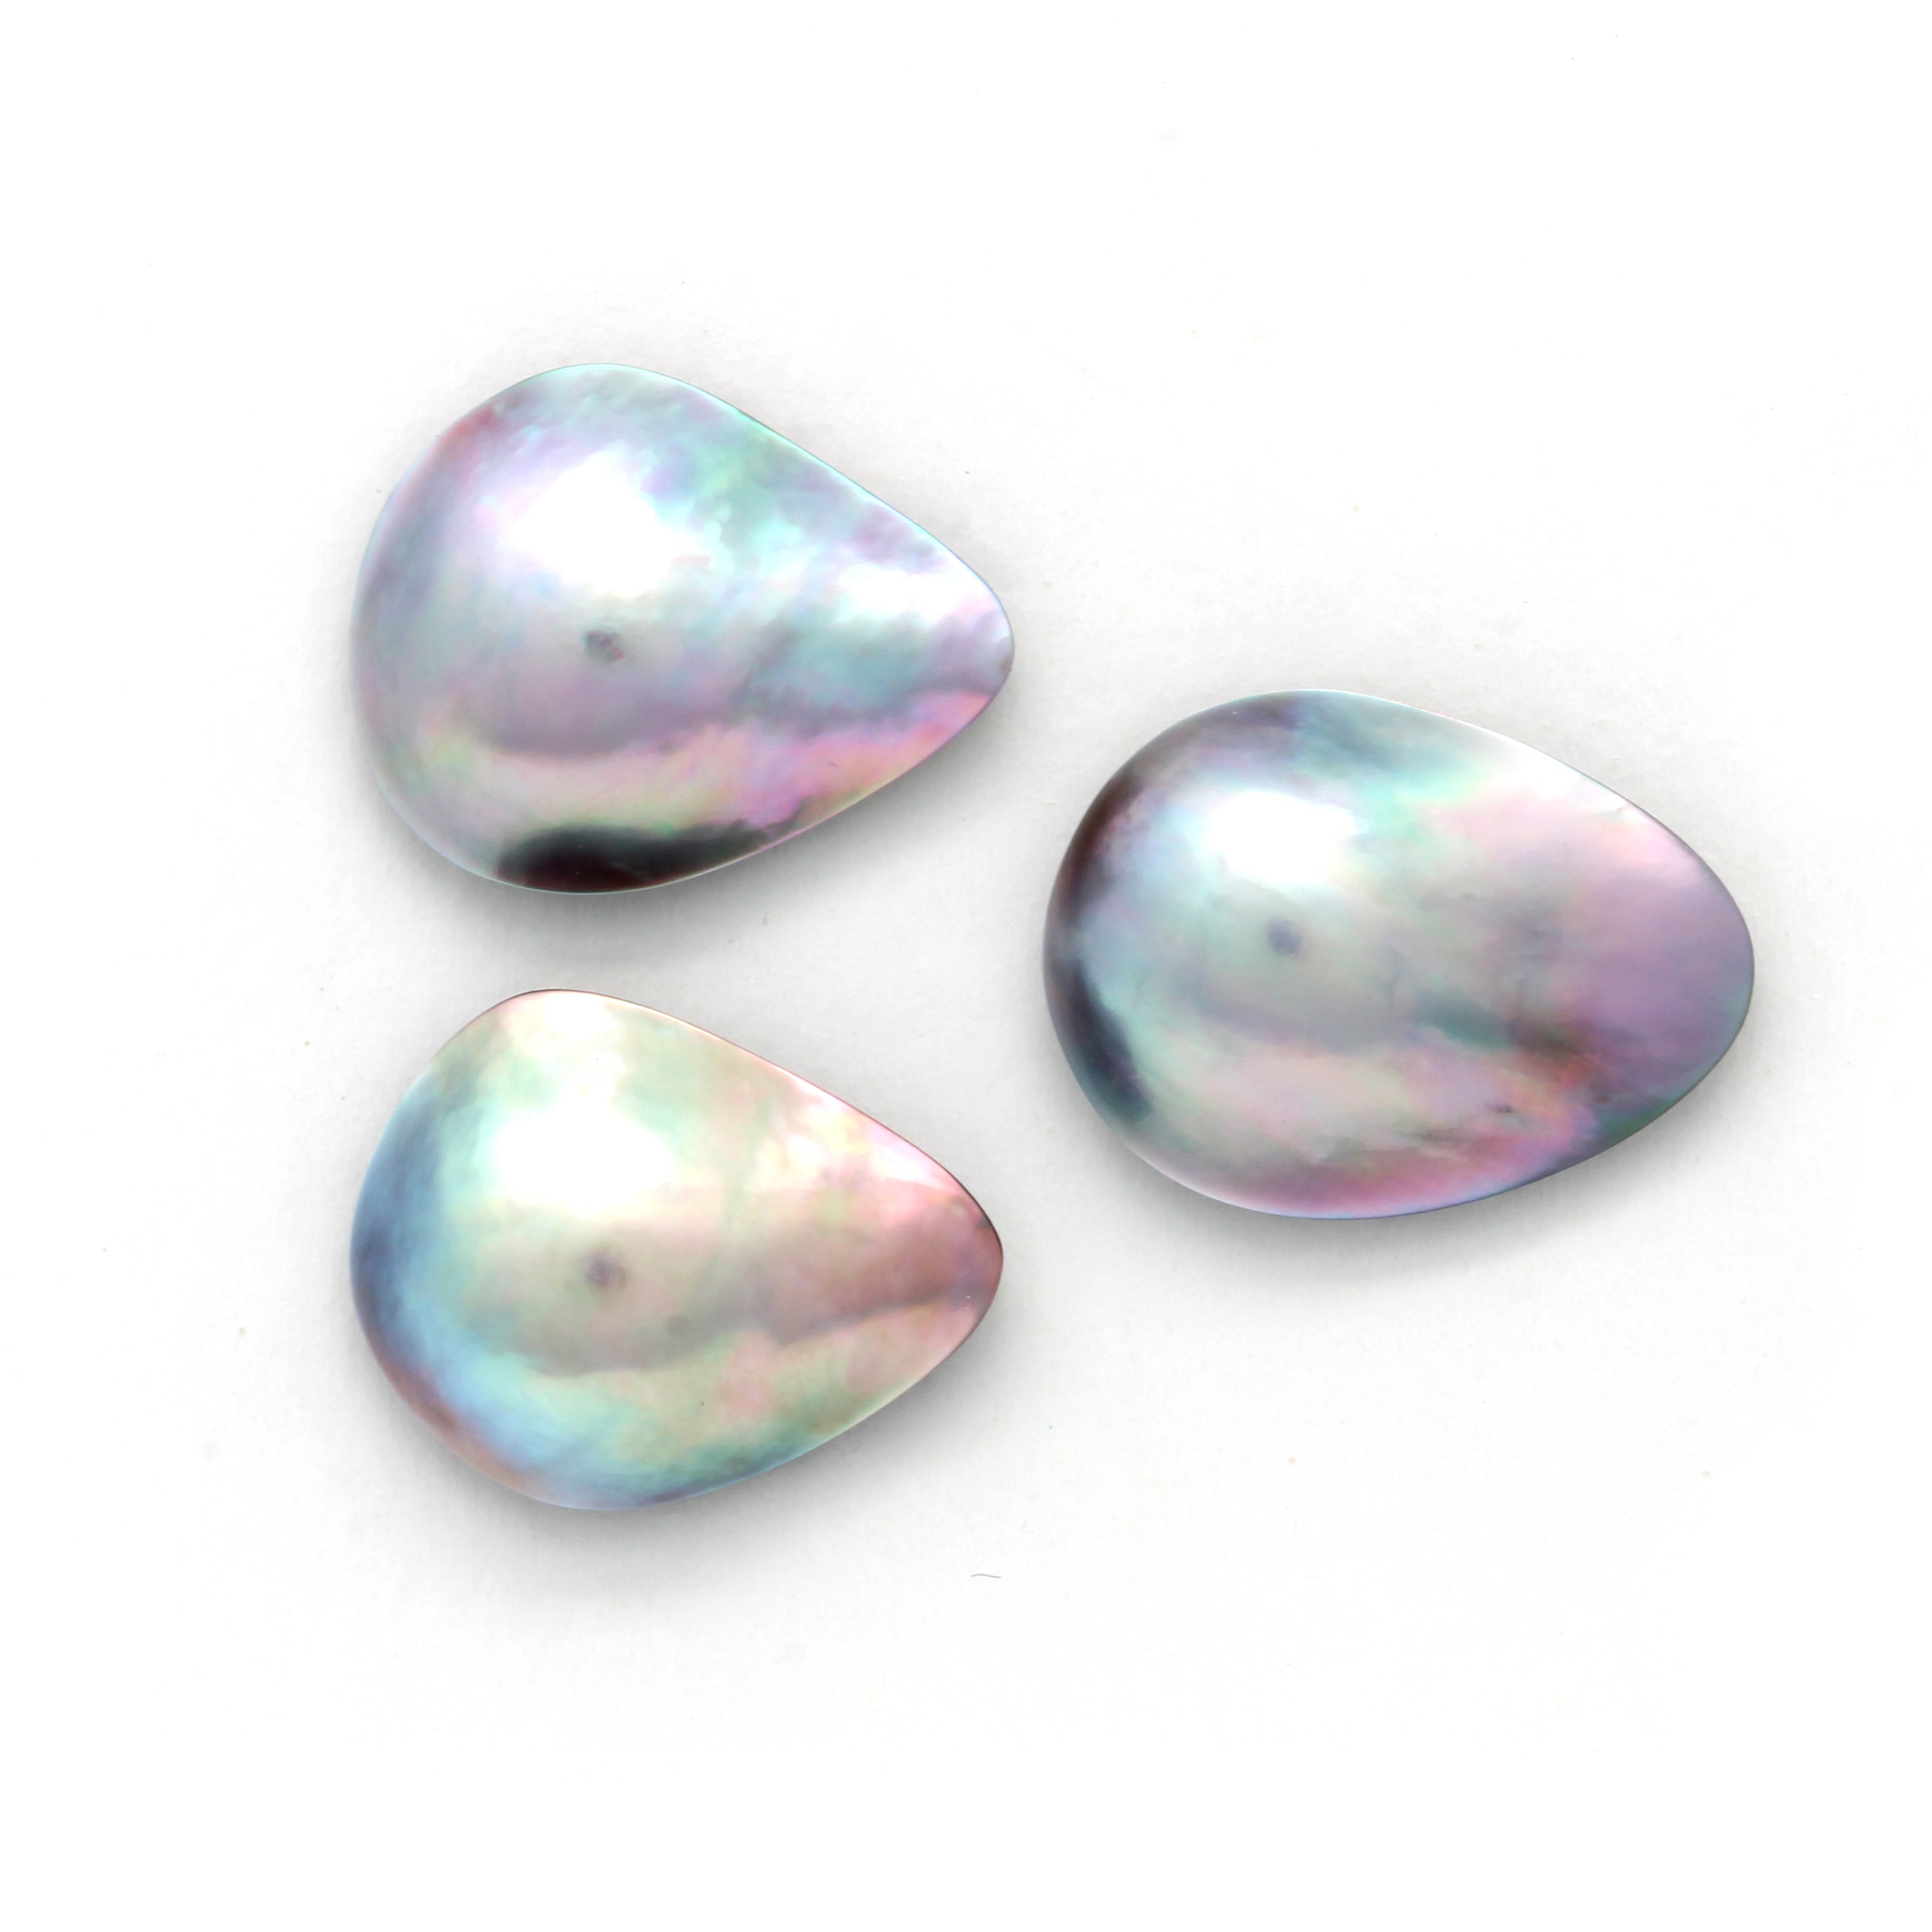 3 Cortez Mabe Pearls "A" Grade